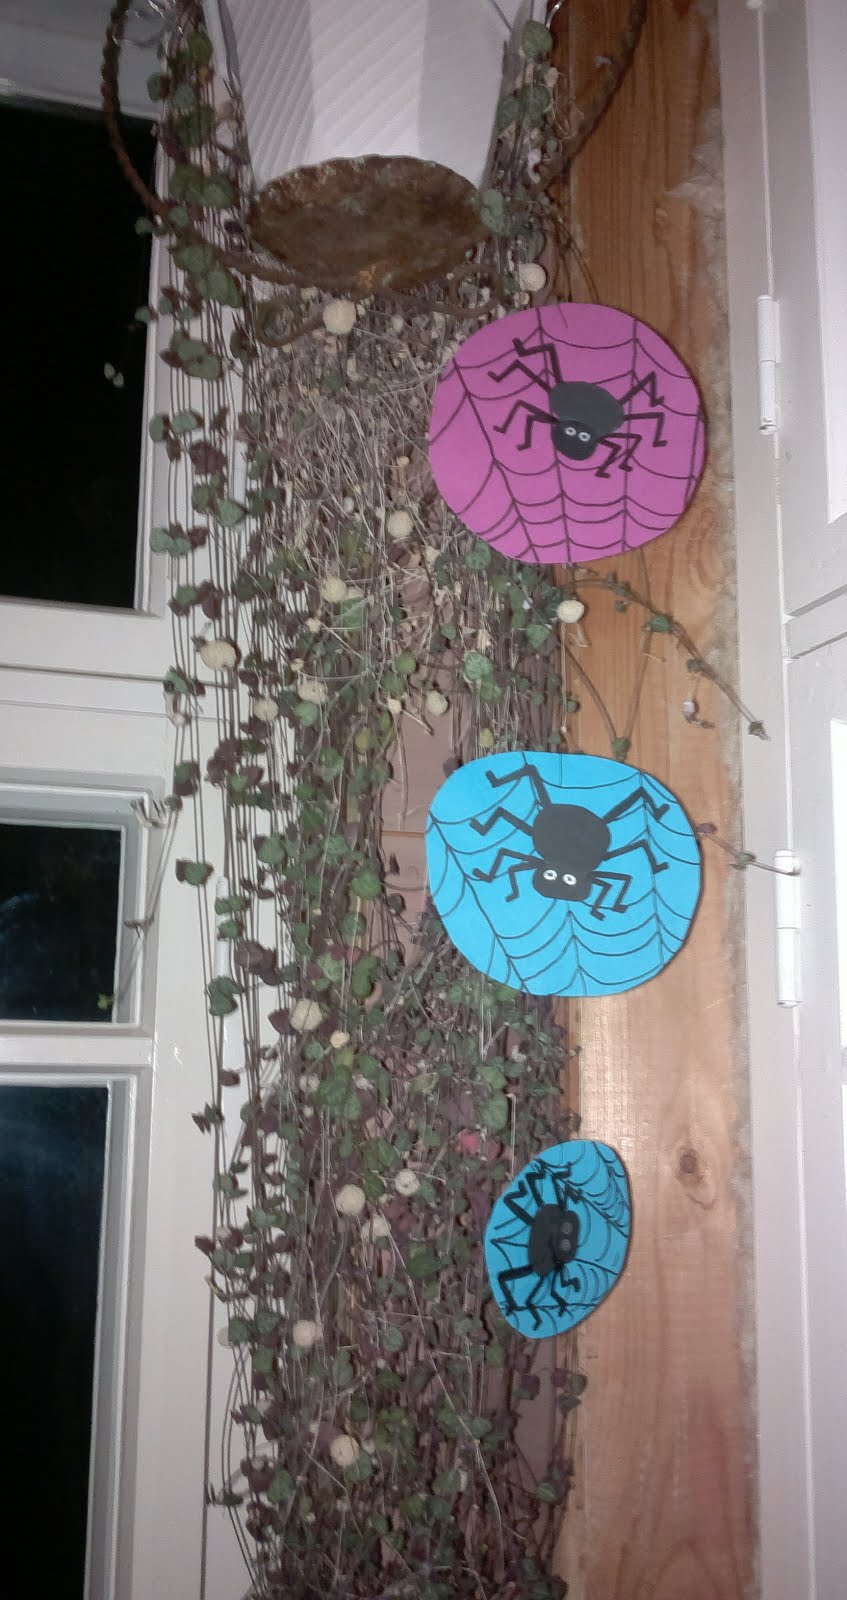 Iik, hämähäkkejä! Halloween-askarteluohjeita